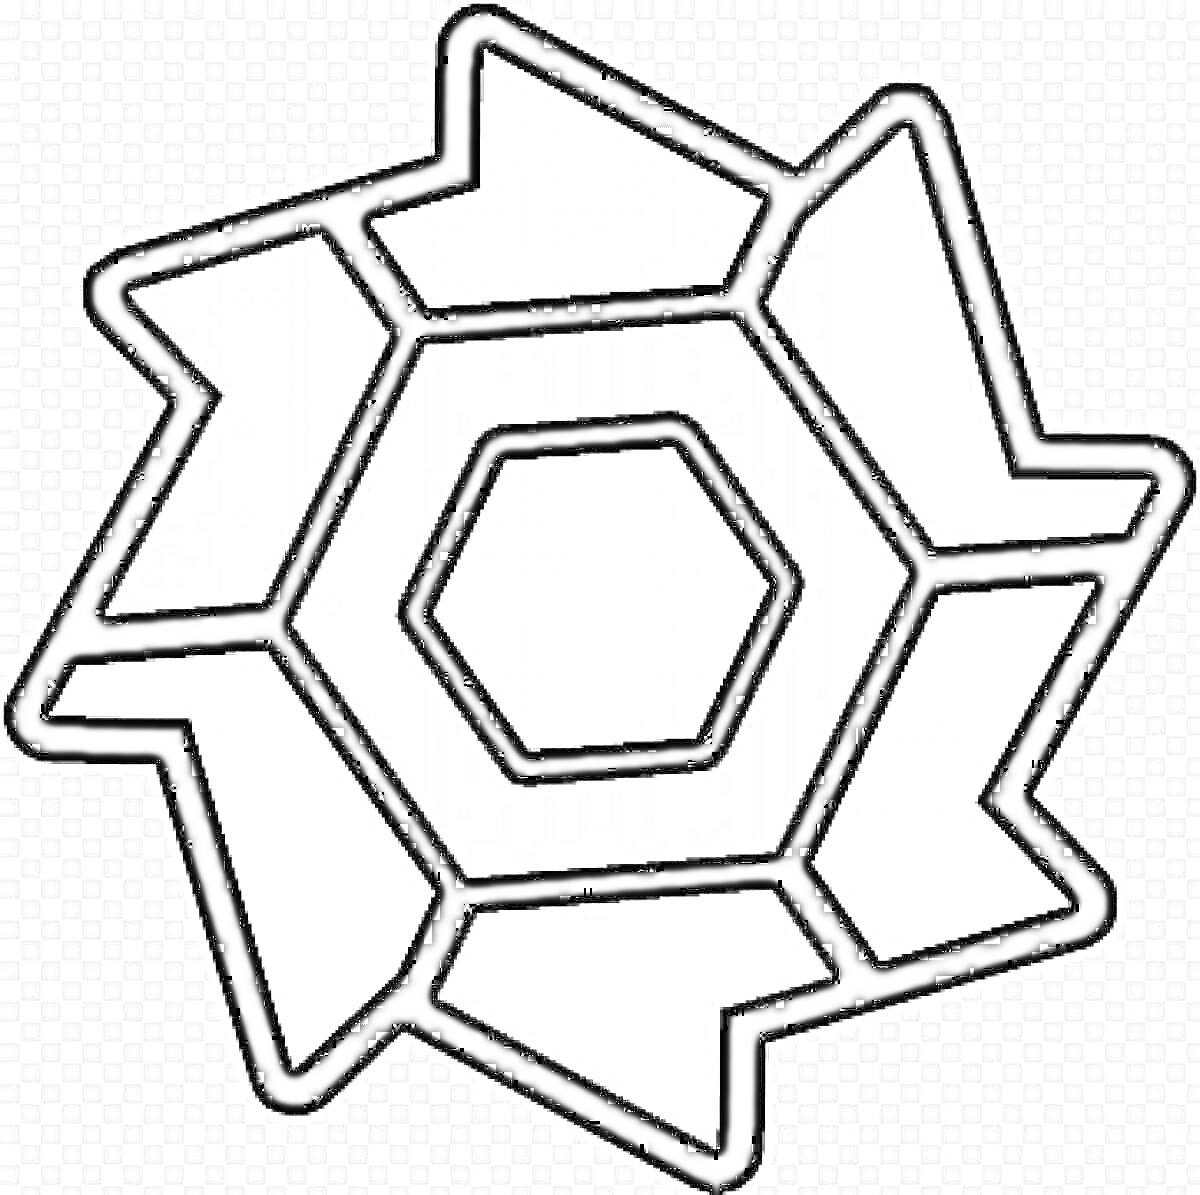 Геометрическая фигура в стиле Geometry Dash с центральным шестиугольником и окружающими трапециями